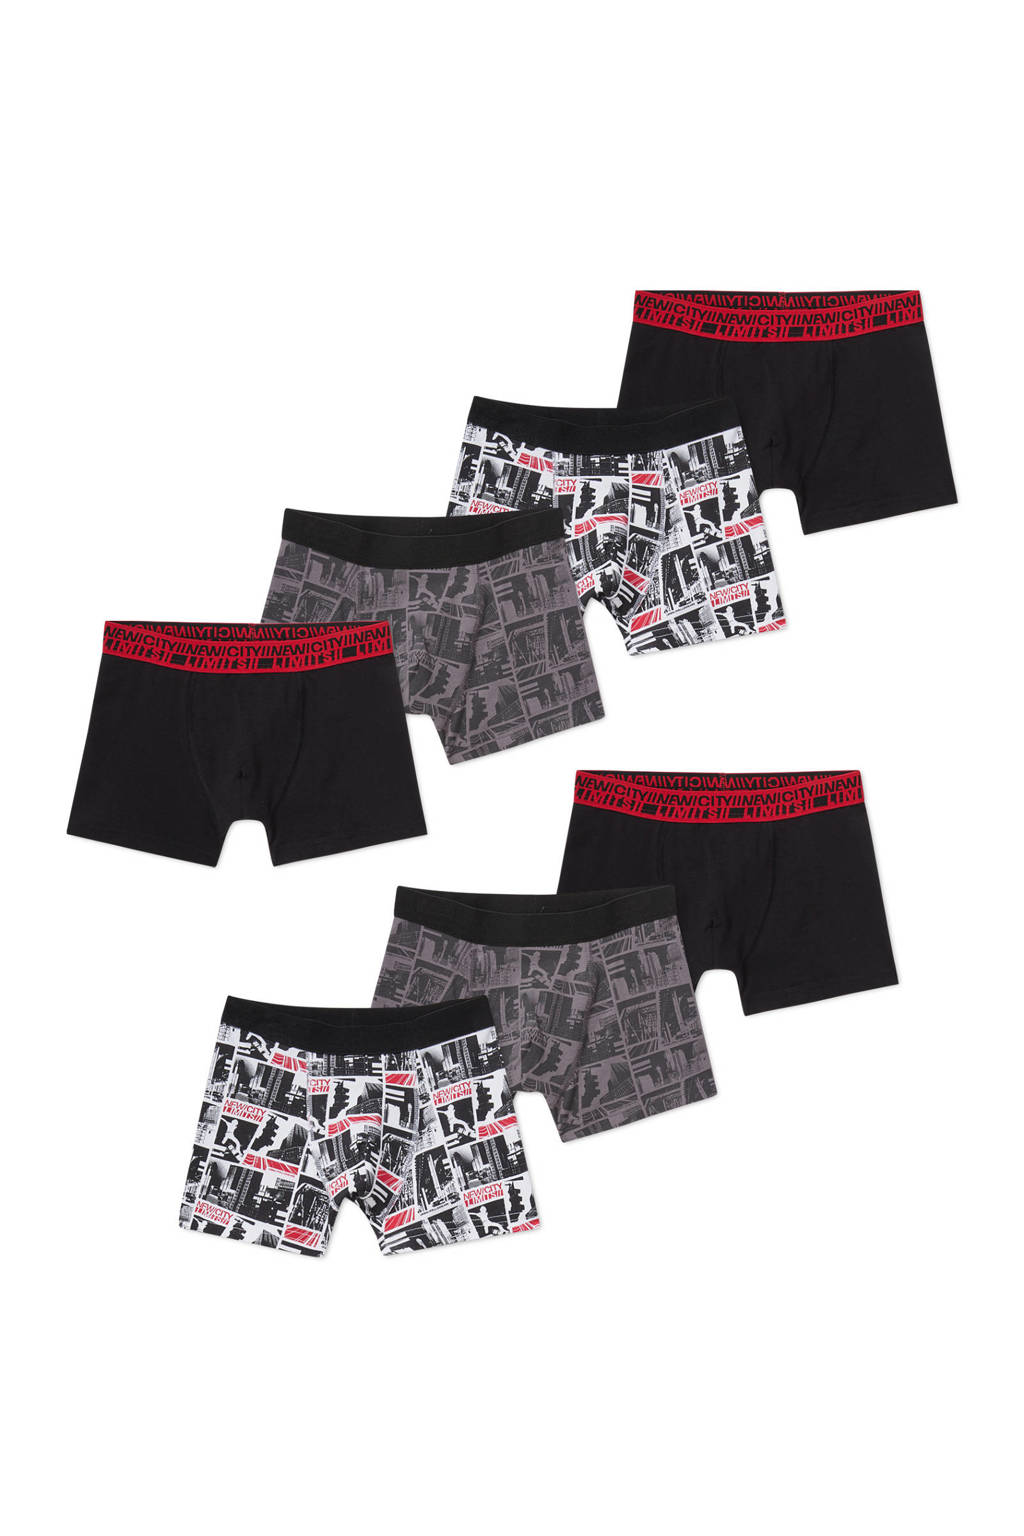 C&A   boxershort - set van 7 zwart/grijs/multi, Zwart/grijs/multi